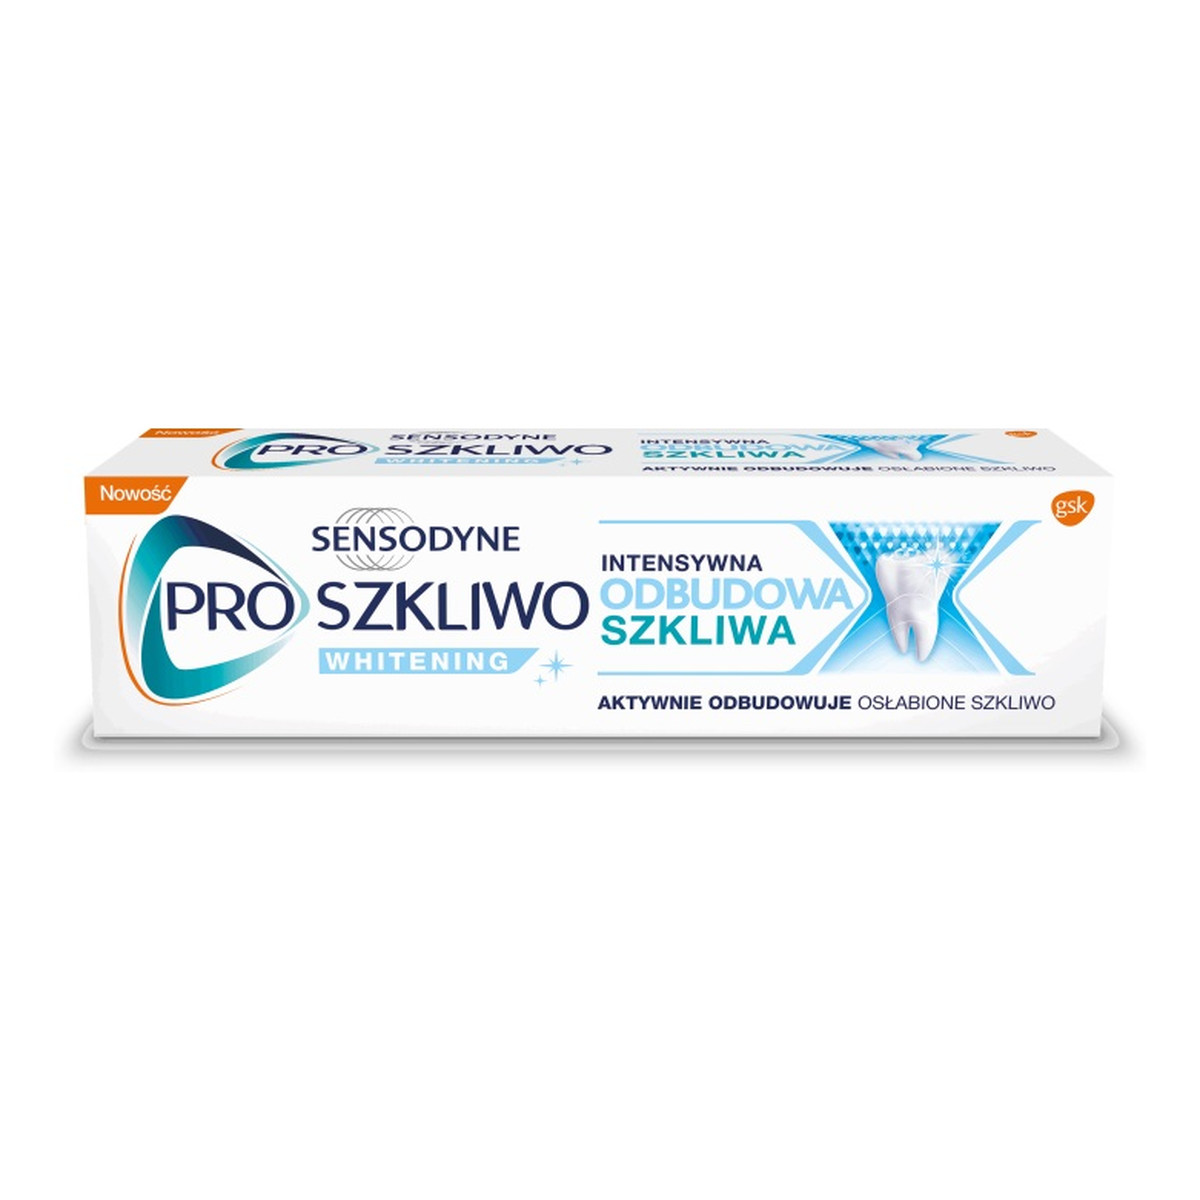 Sensodyne Proszkliwo intensywna odbudowa szkliwa pasta do zębów whitening 75ml